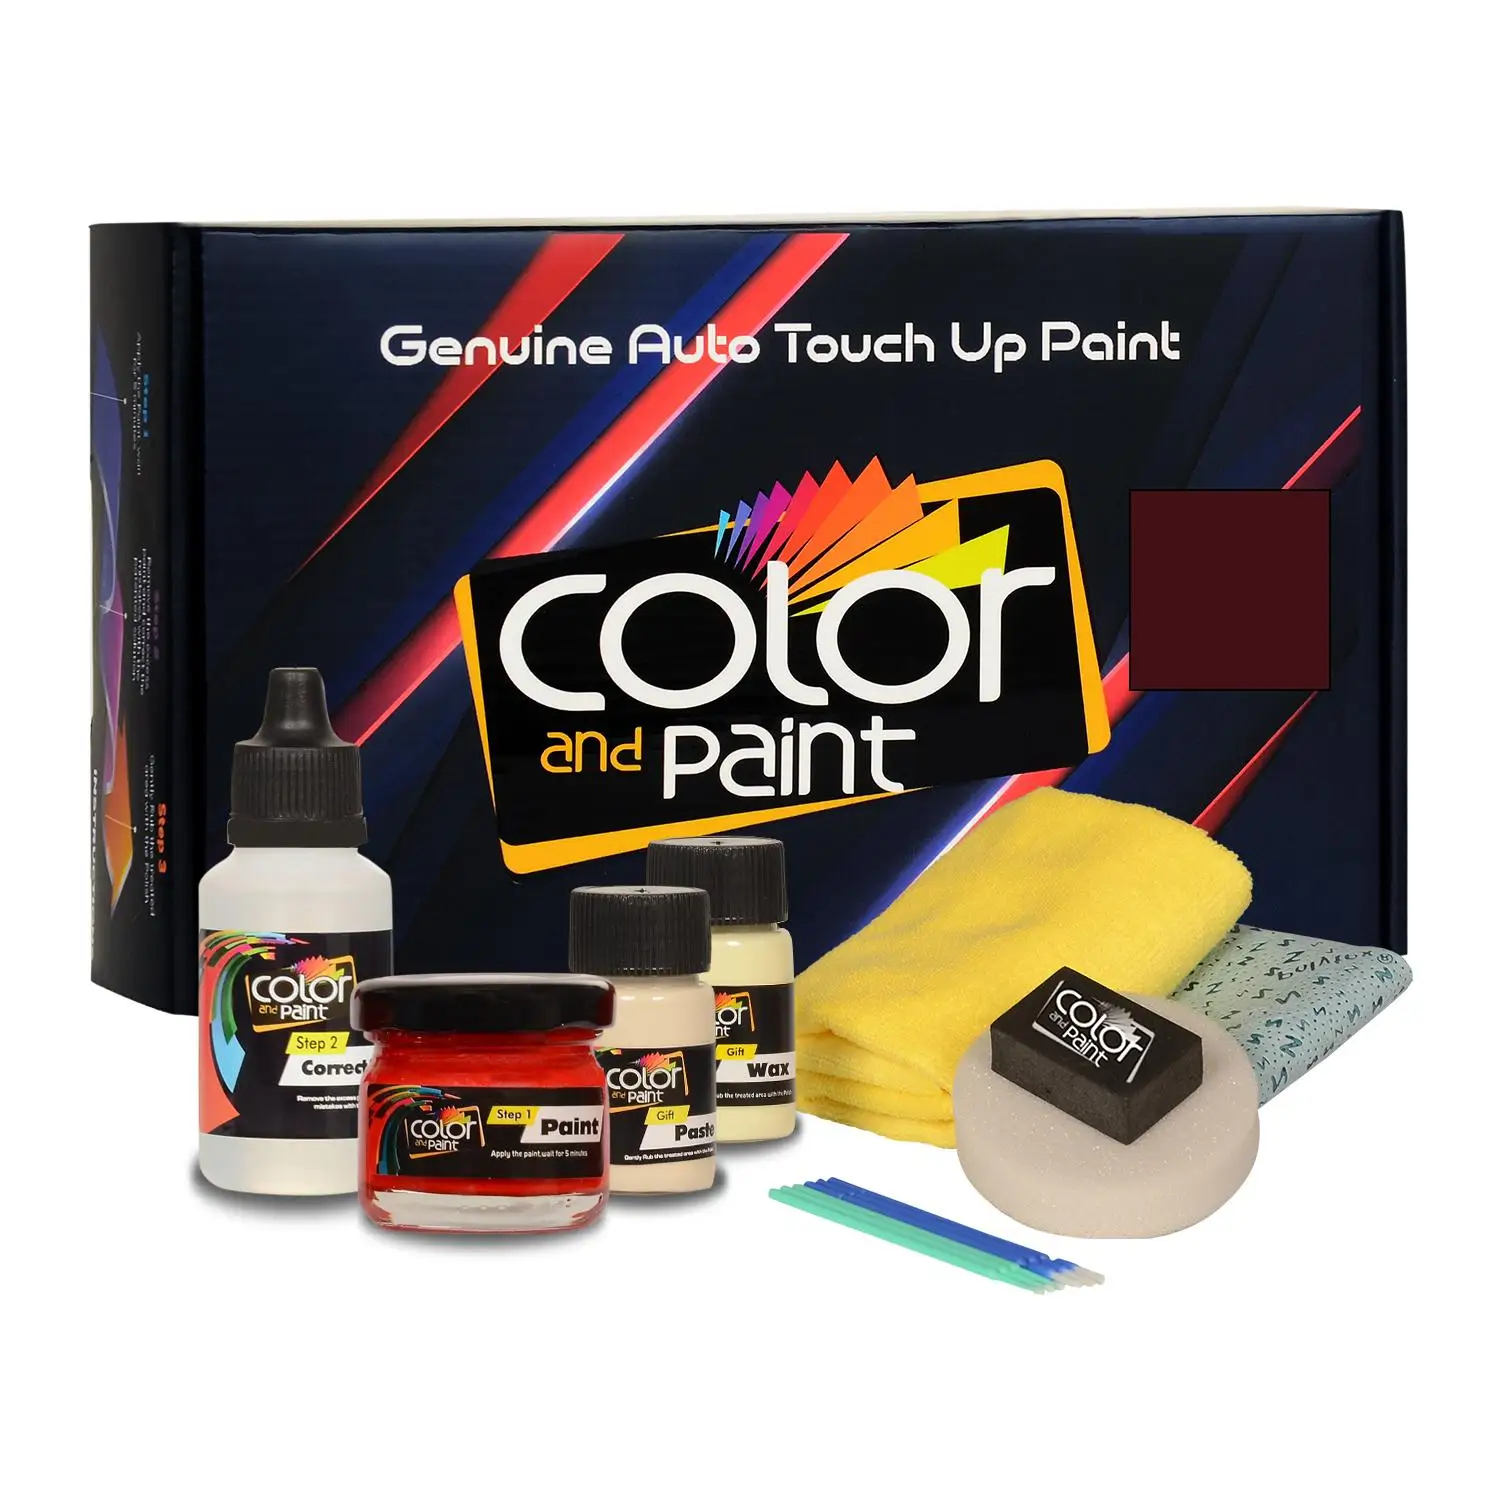 

Color and Paint compatible with Porsche Automotive Touch Up Paint - CARMONAROT PERLEFFEKT - 8 B1 - Basic Care